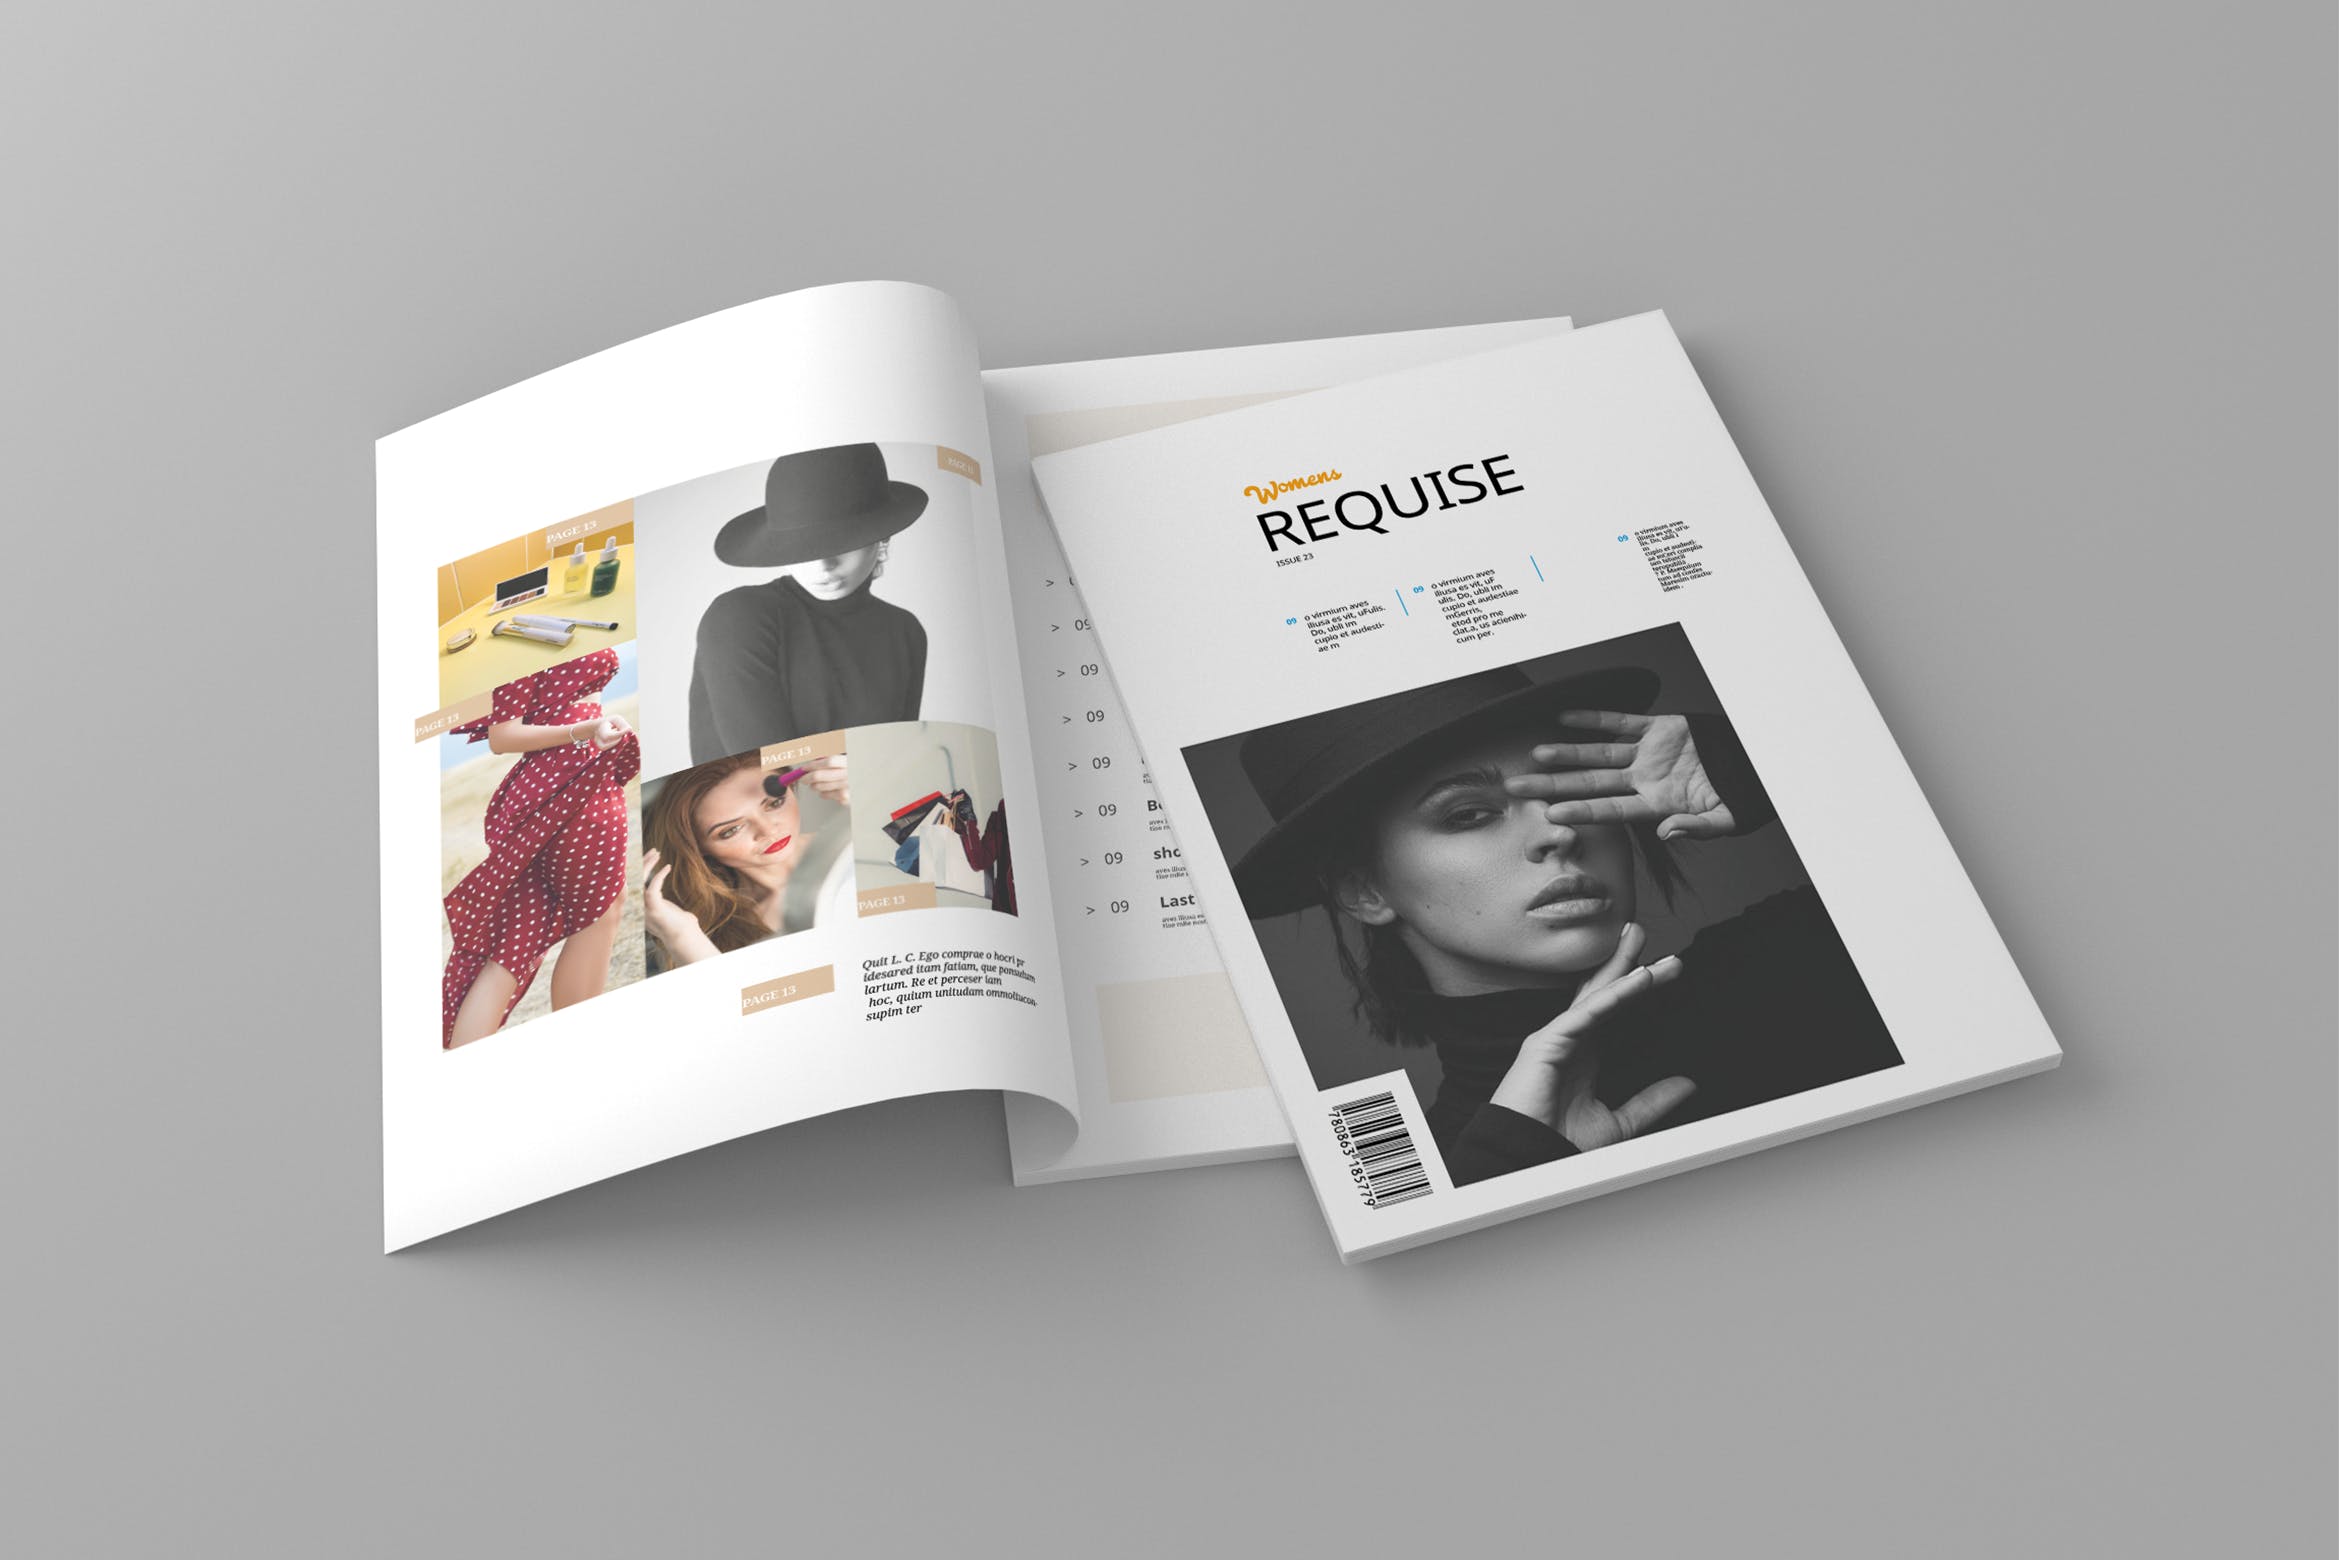 女性时尚主题非凡图库精选杂志排版设计模板 Requise – Magazine Template插图